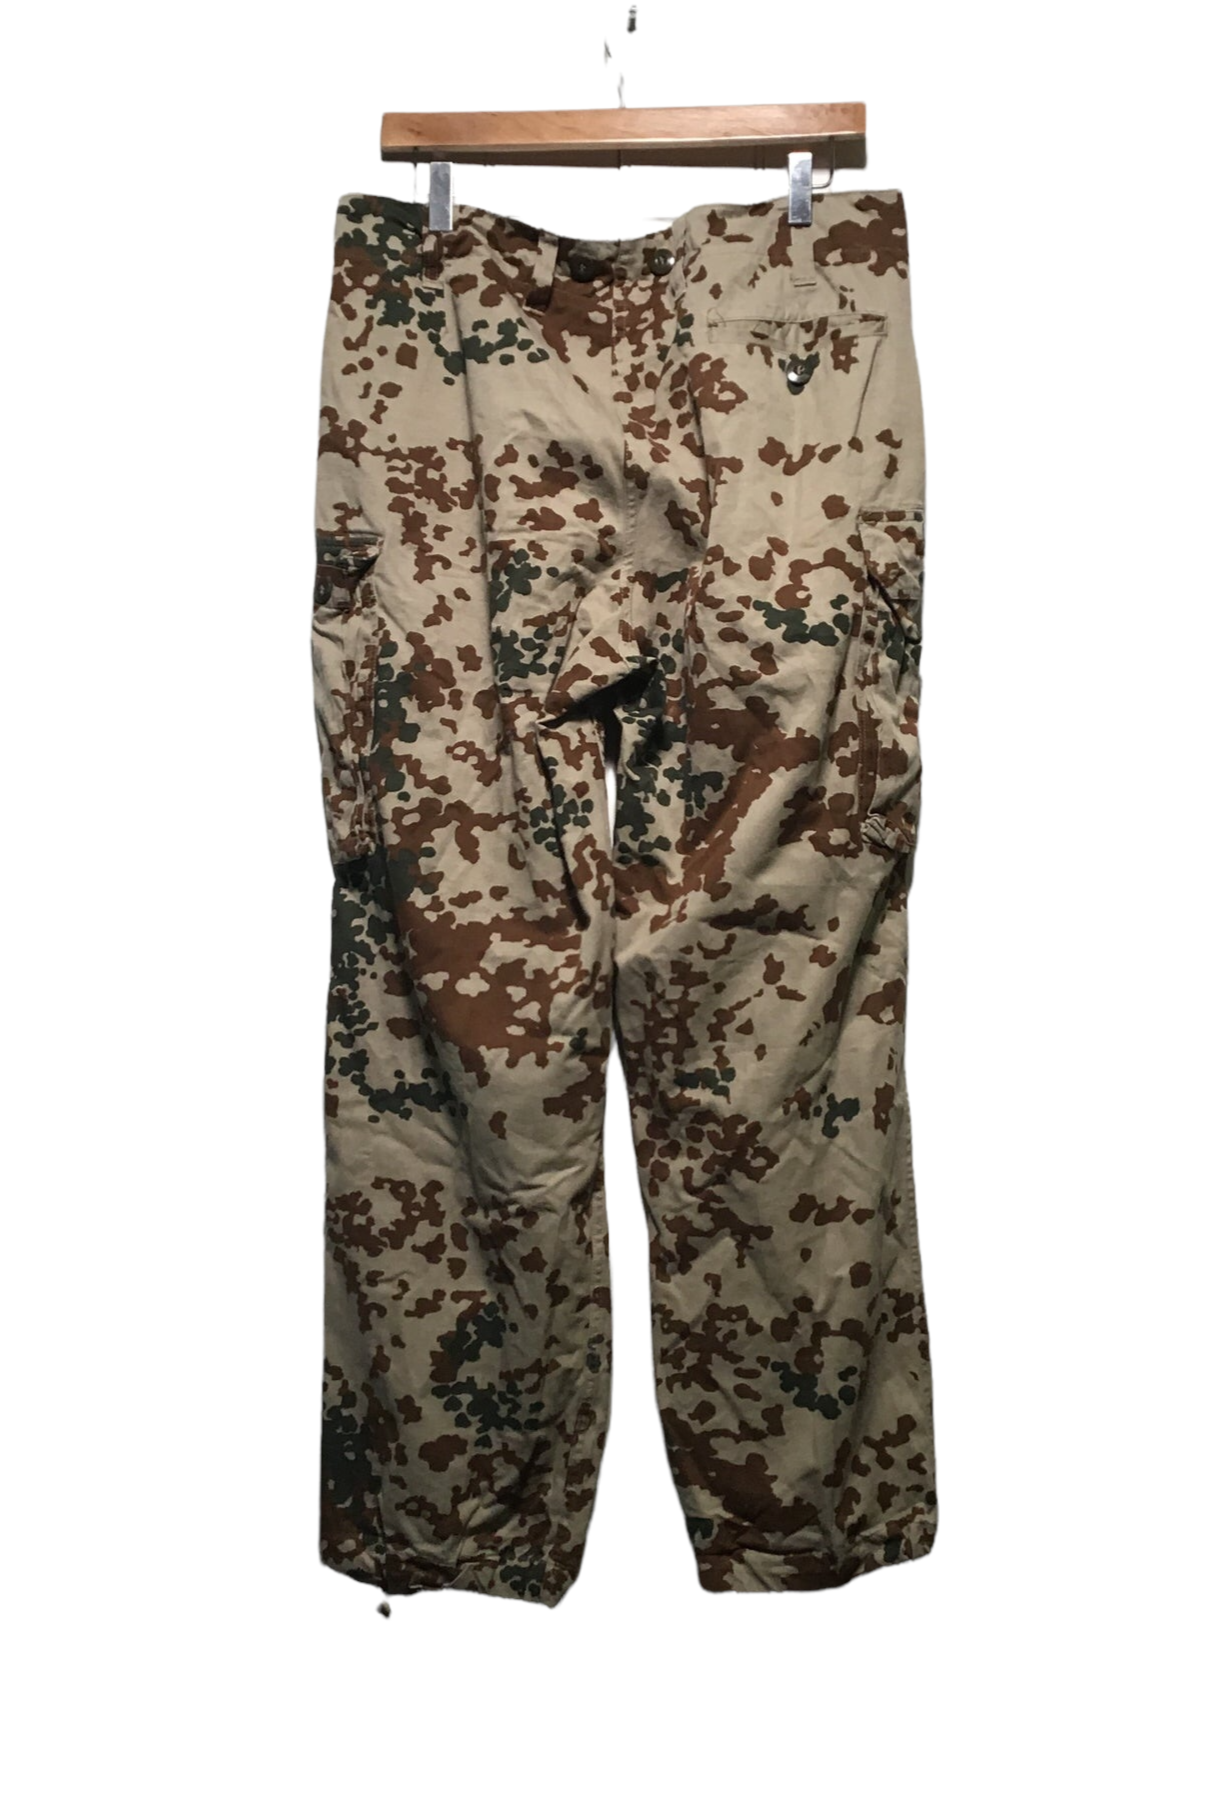 Army Pants (33X29)